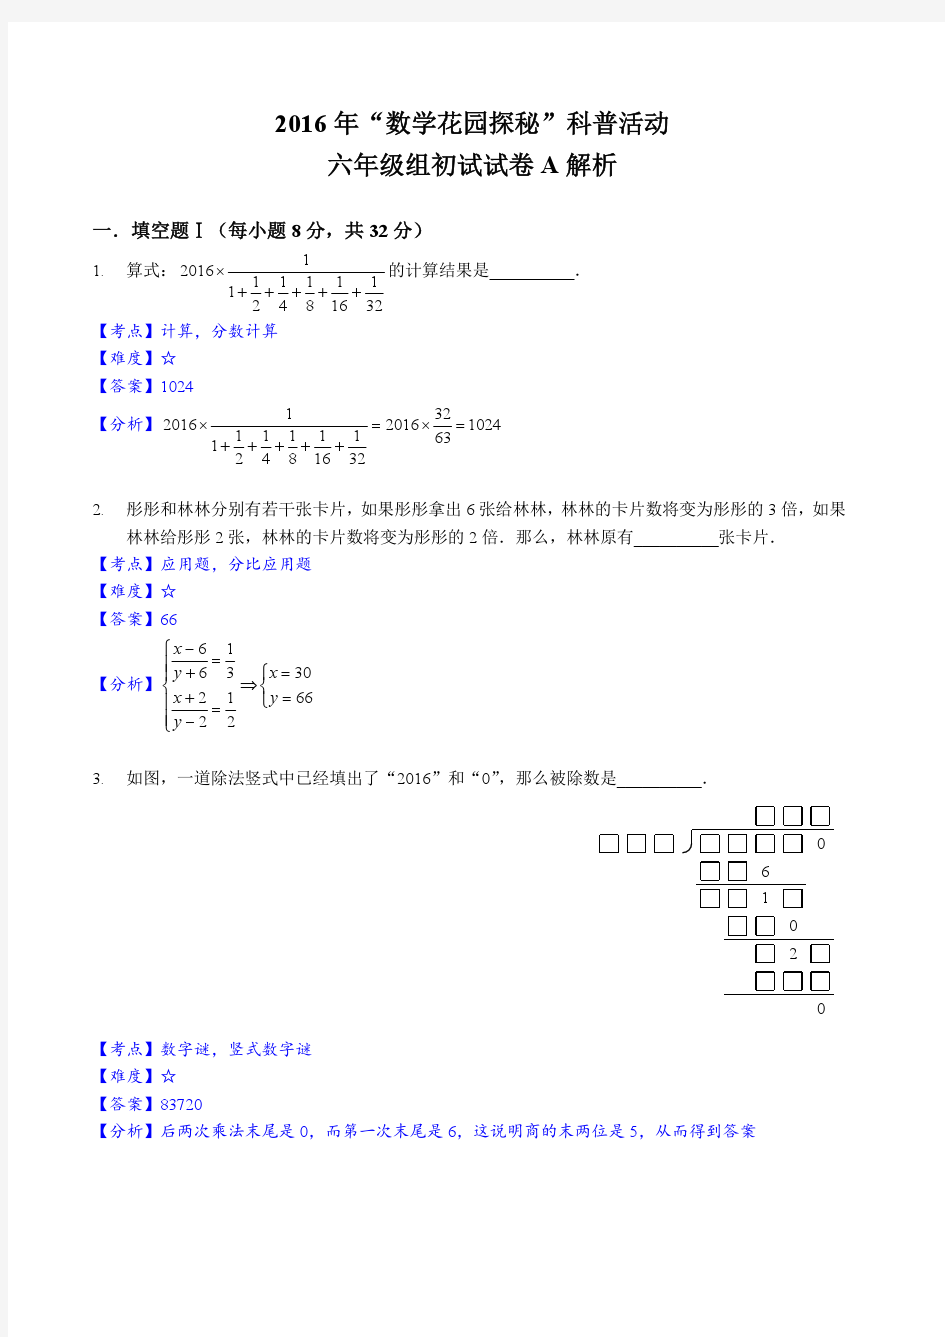 2016年数学花园探秘六年级初赛(解析)_52